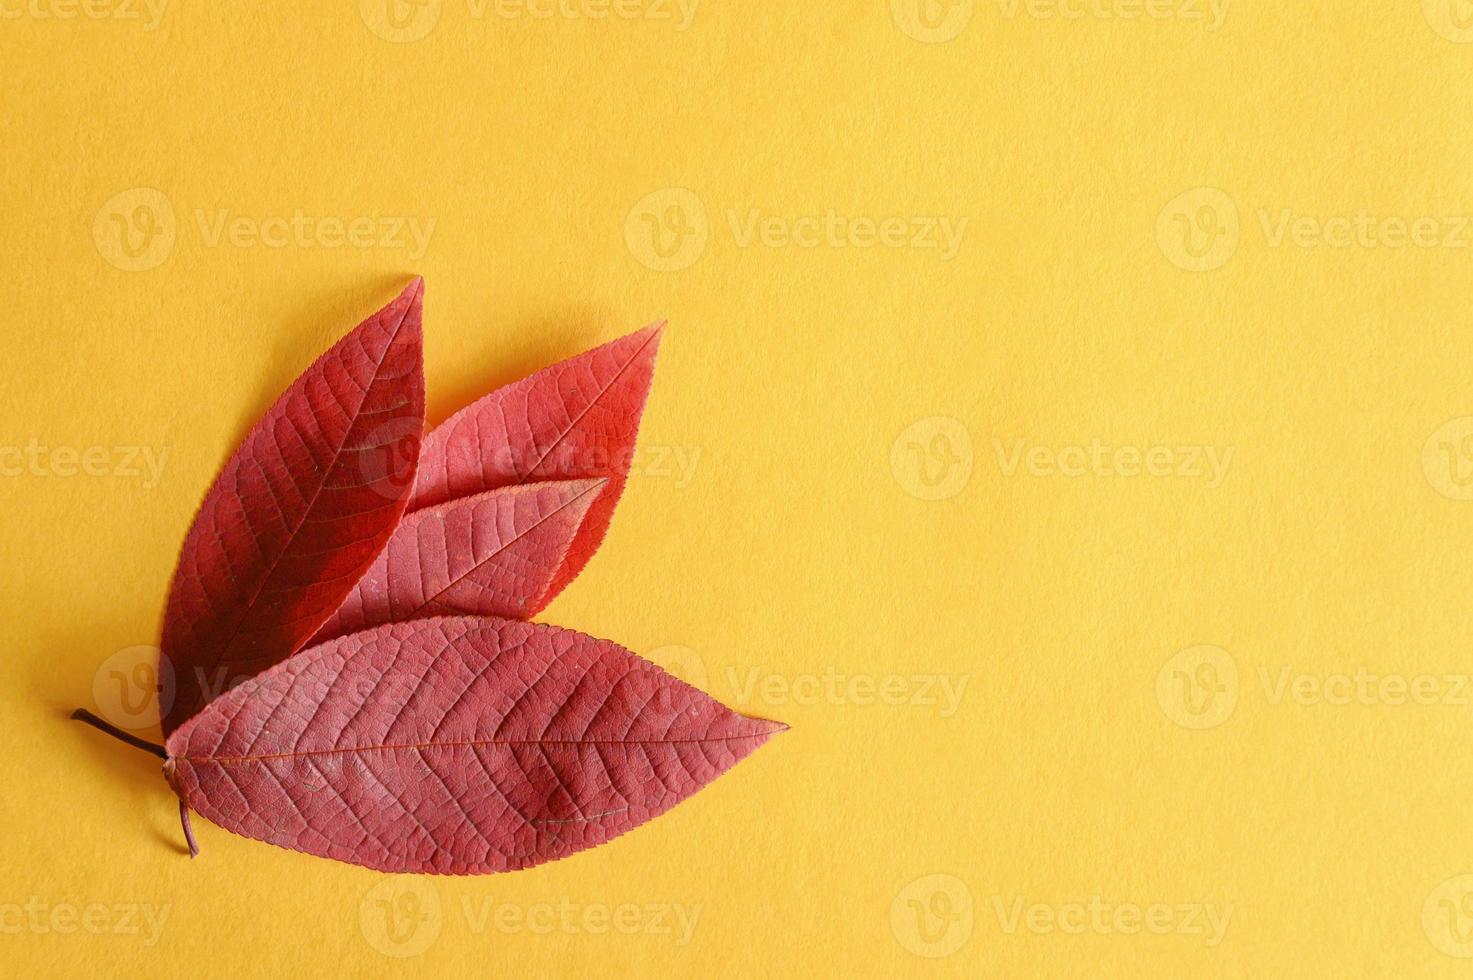 mehrere rote gefallene Herbstkirschblätter auf einem gelben Papierhintergrund liegen flach foto